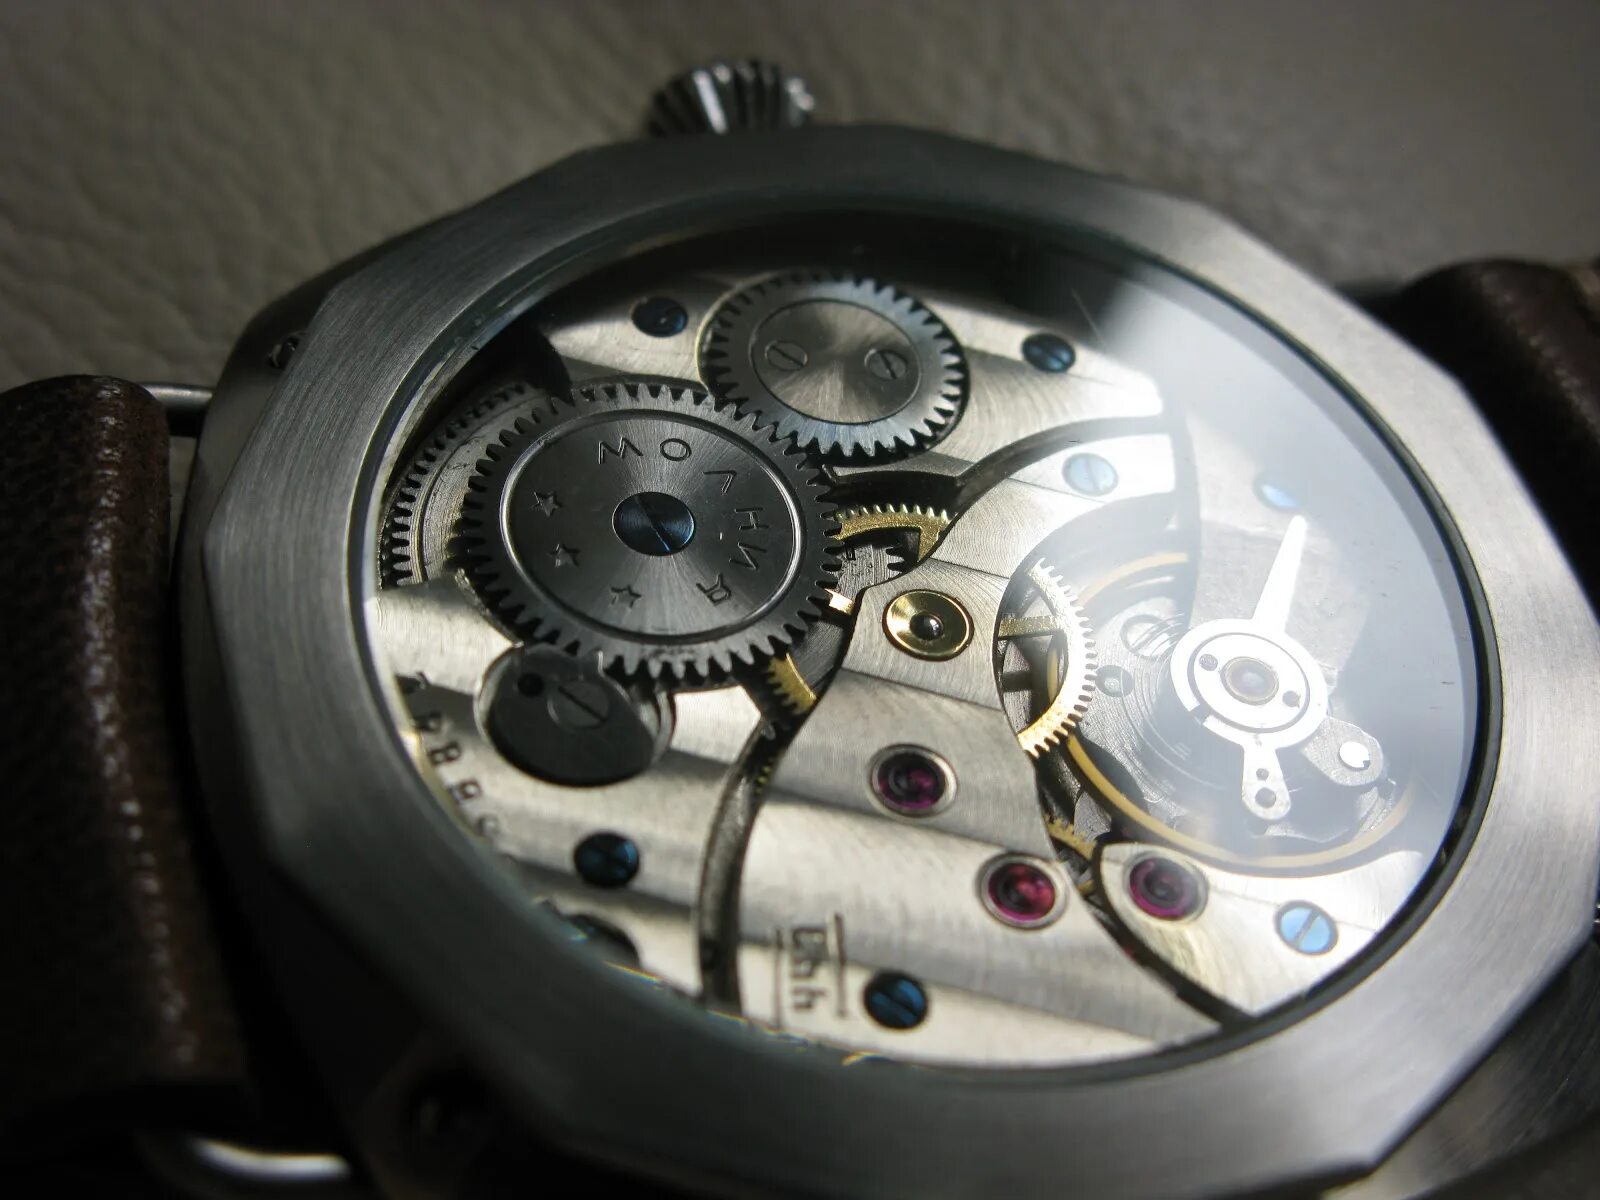 Watch6 classic 47 мм. Хомаж молния Радиомир. Купить корпус часов для марьяжа механизм ета 6497 или 3602 47 мм.